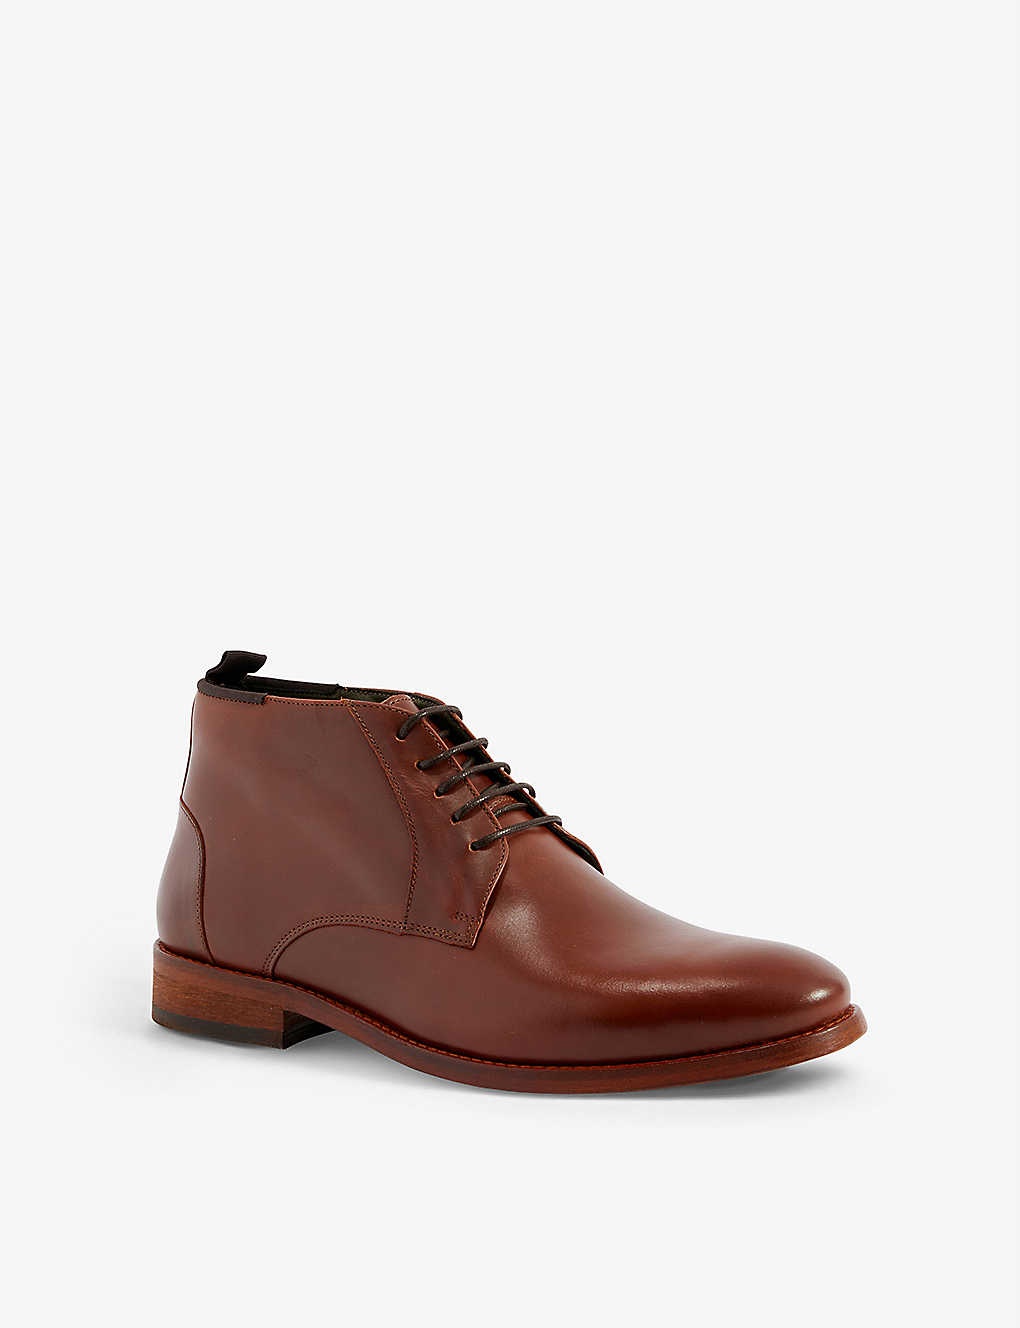 Benwell leather chukka boots - 3